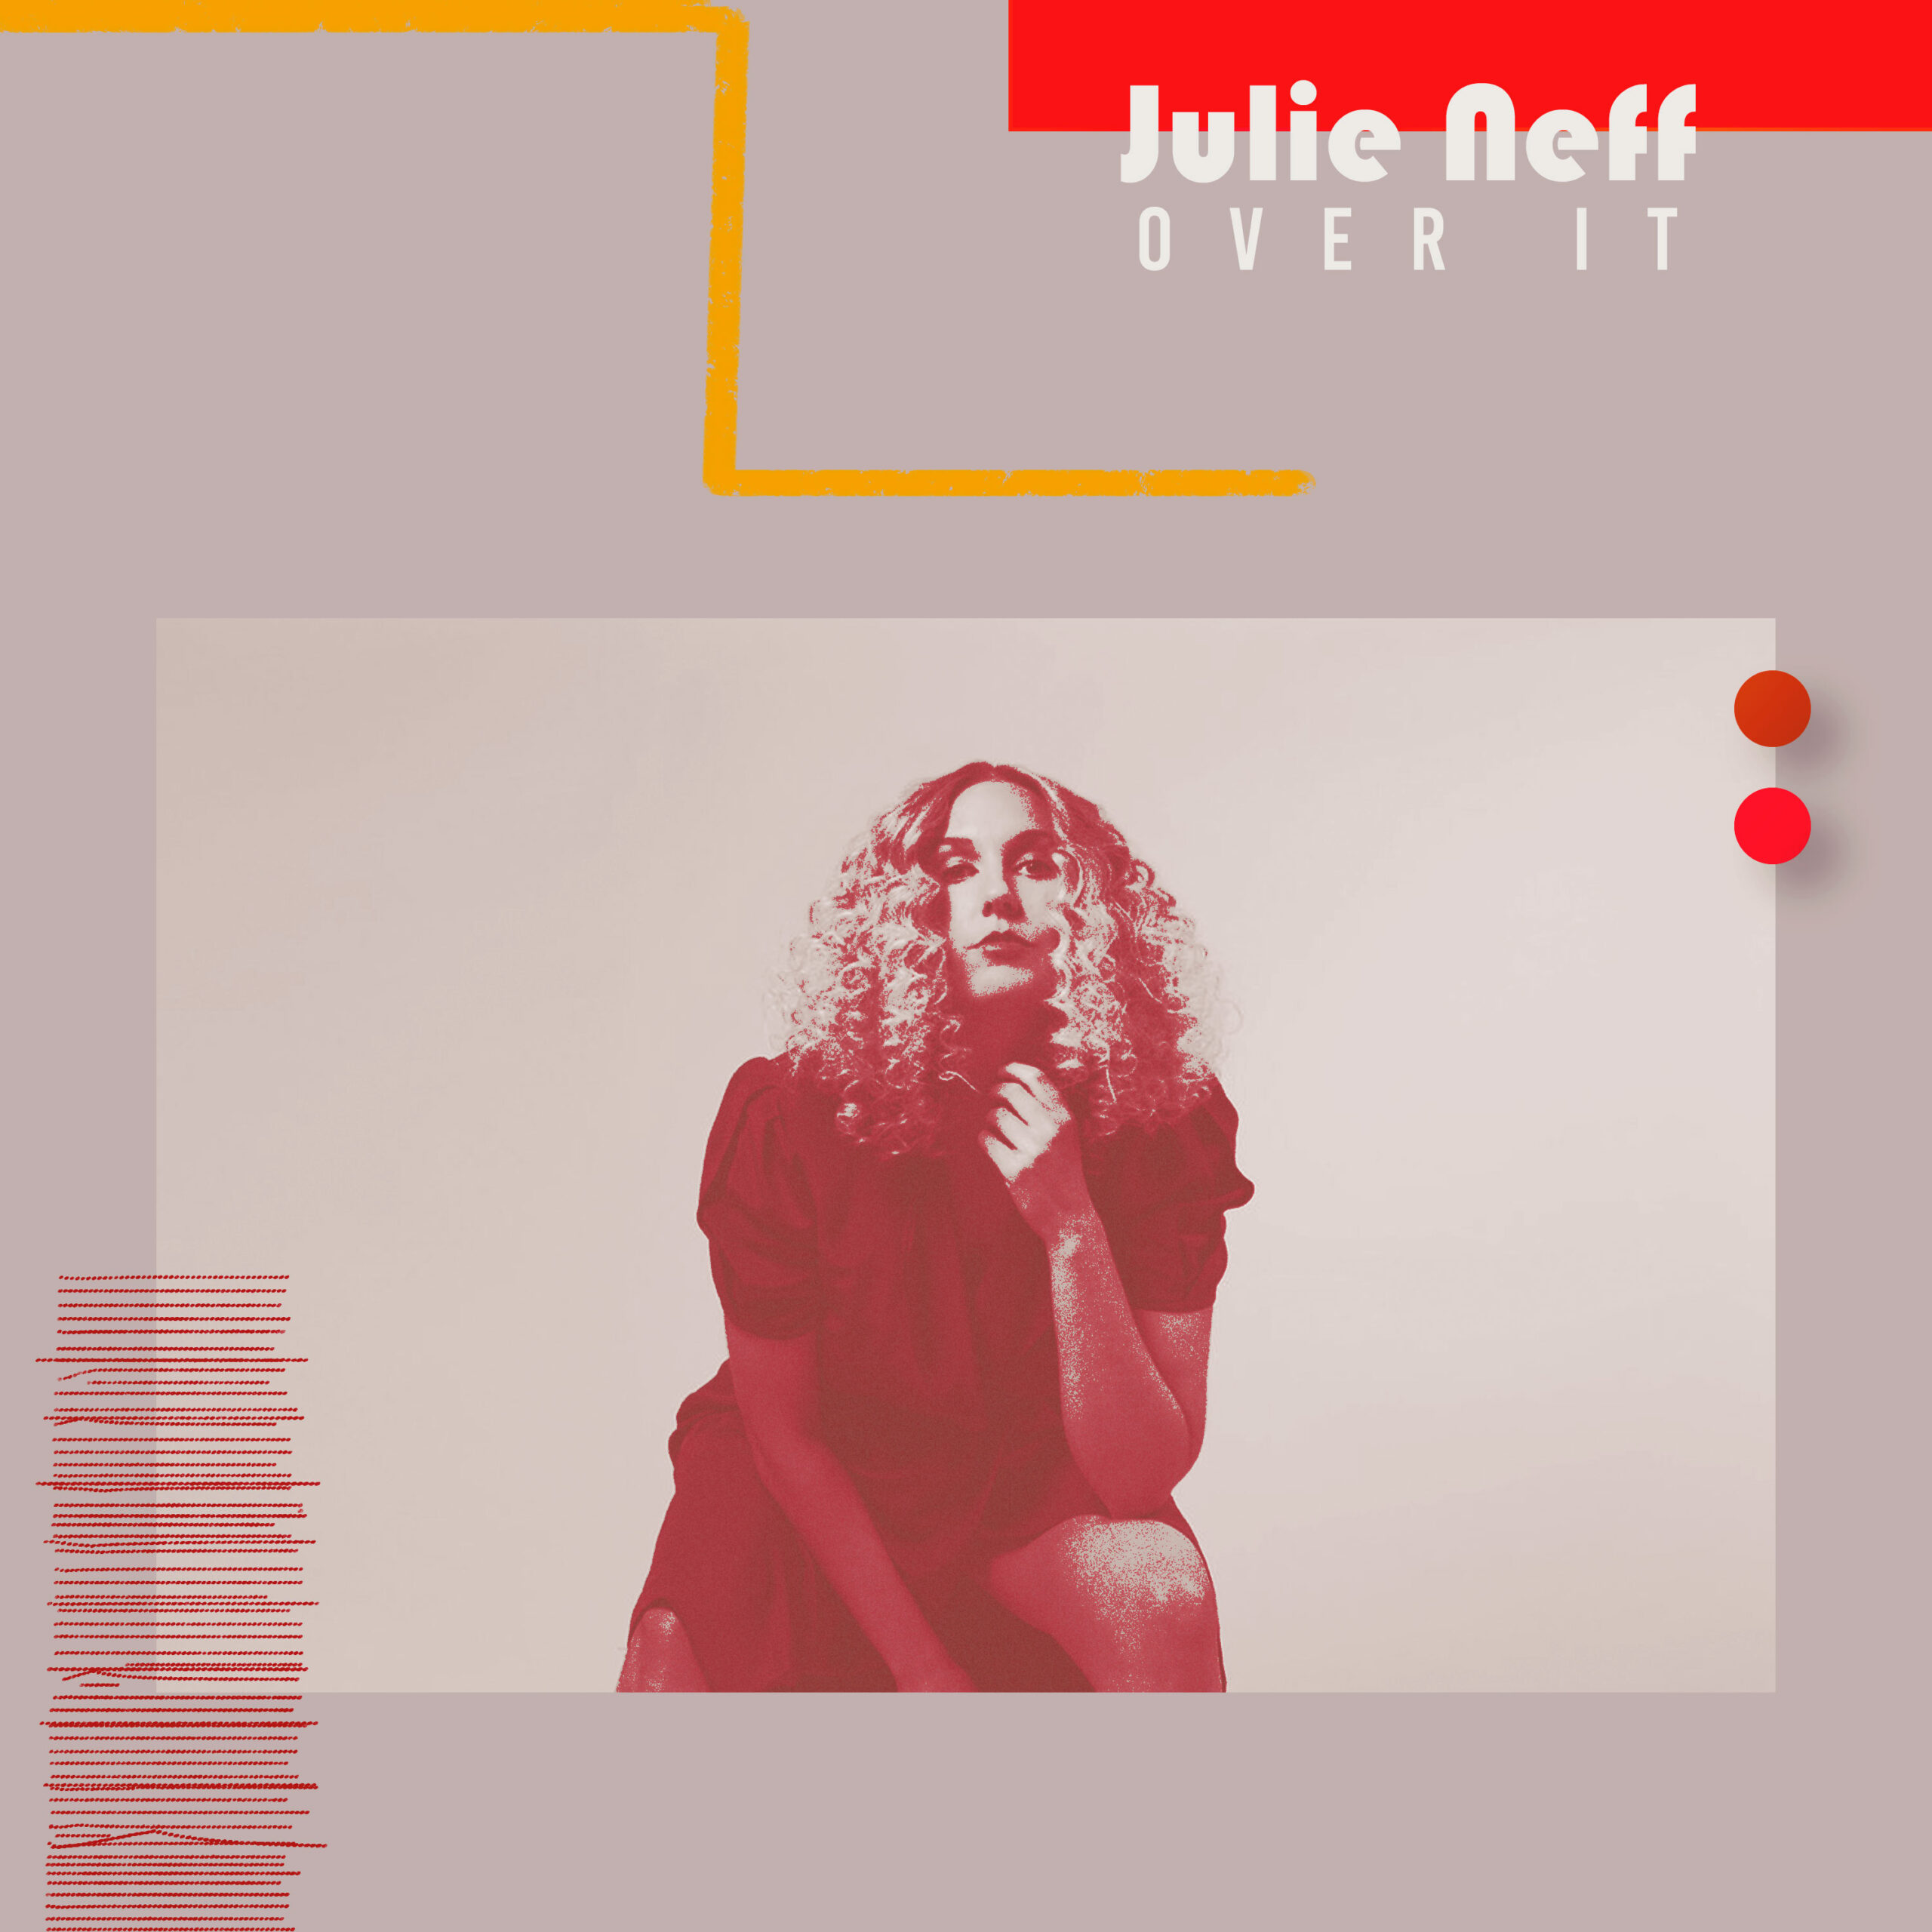 Julie Neff: artista canadense de conexões brasileiras lança seu segundo EP “Over It”